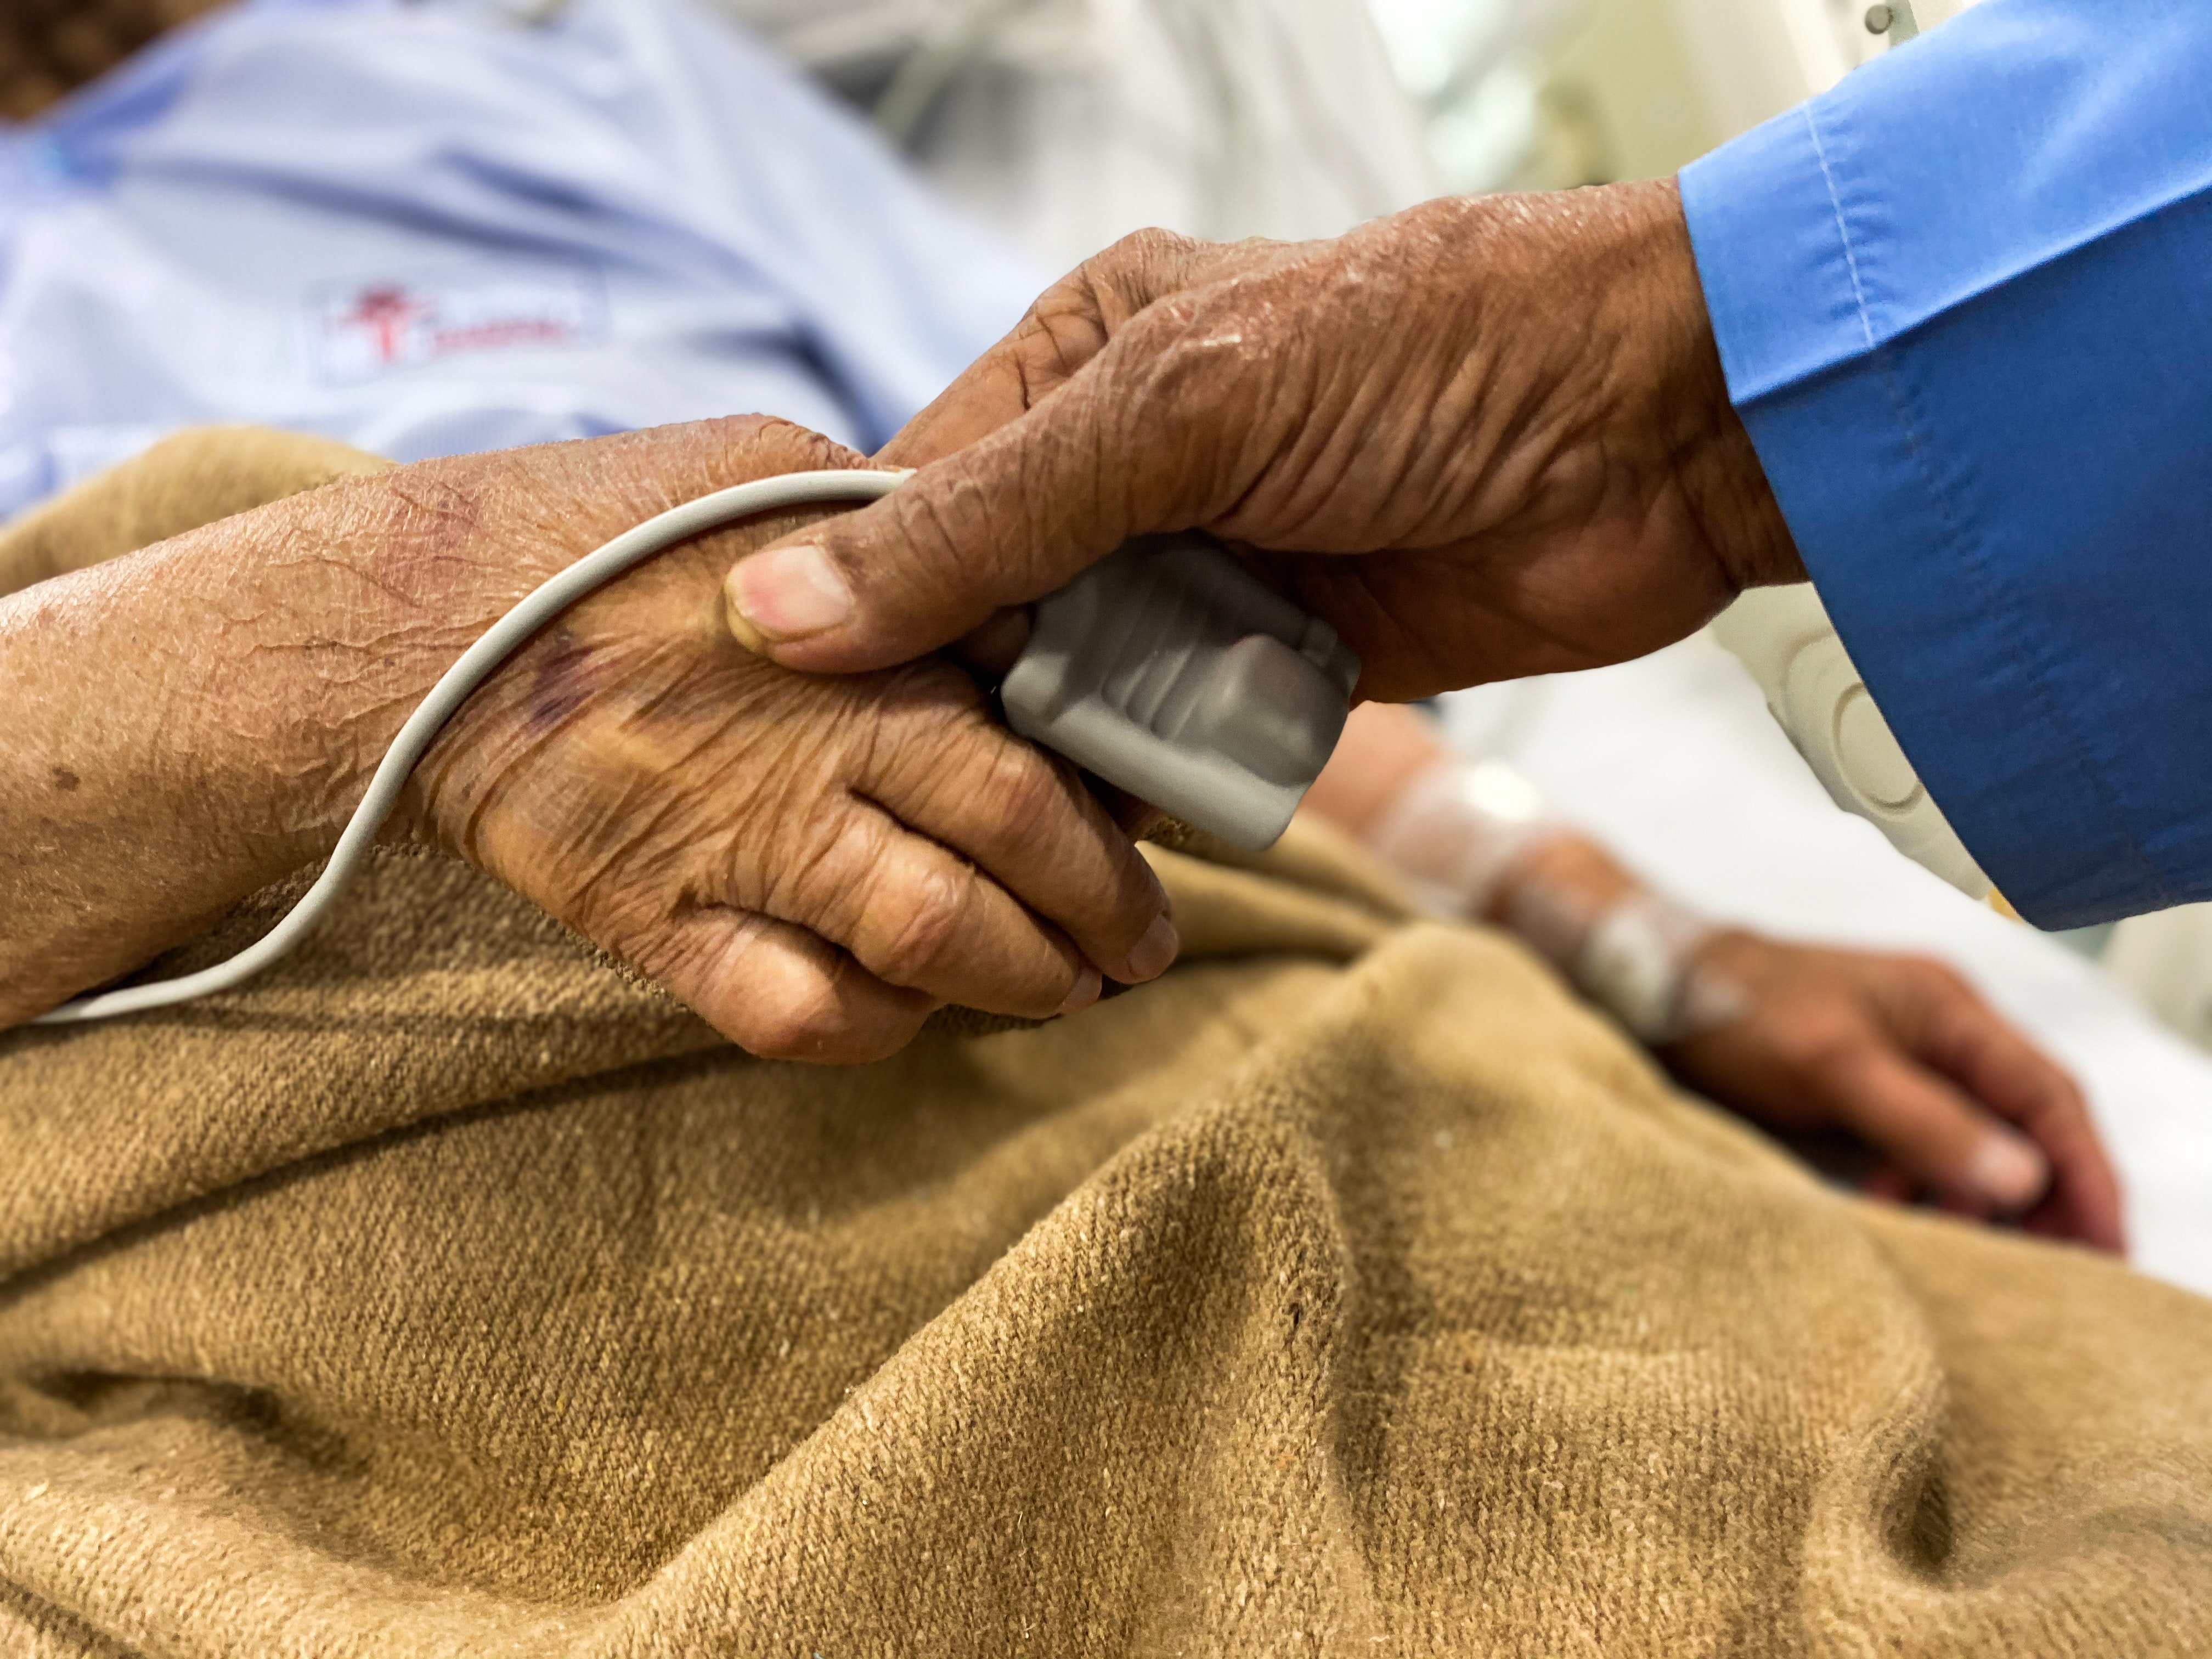 Una mujer mayor recostada en una cama de hospital. | Foto: Pexels